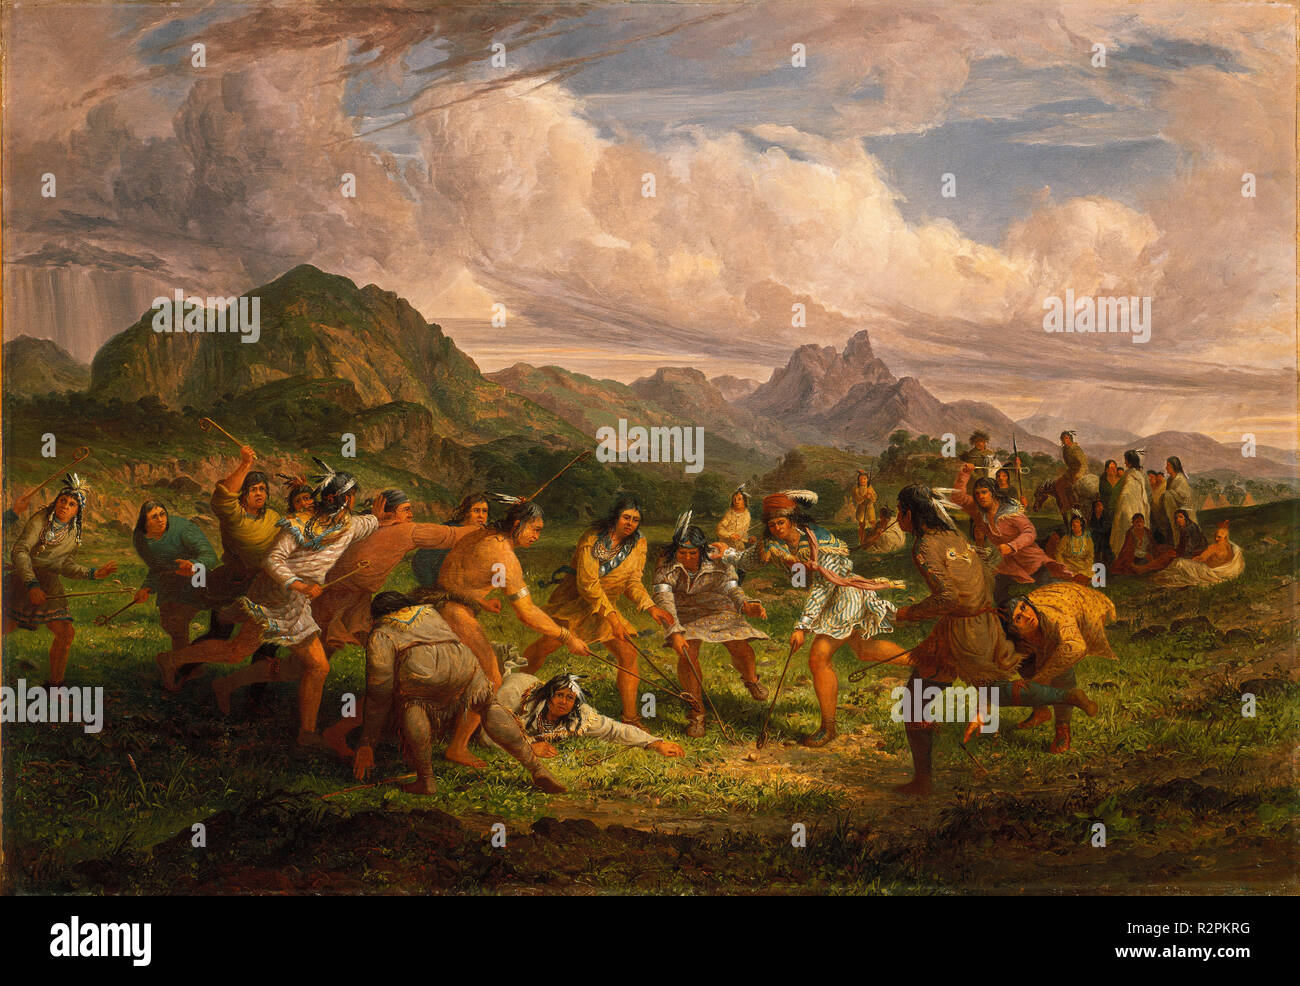 Jugando pelota entre los indios Sioux. Fecha: 1851. Dimensiones: total:  71,4 x 103,2 cm (